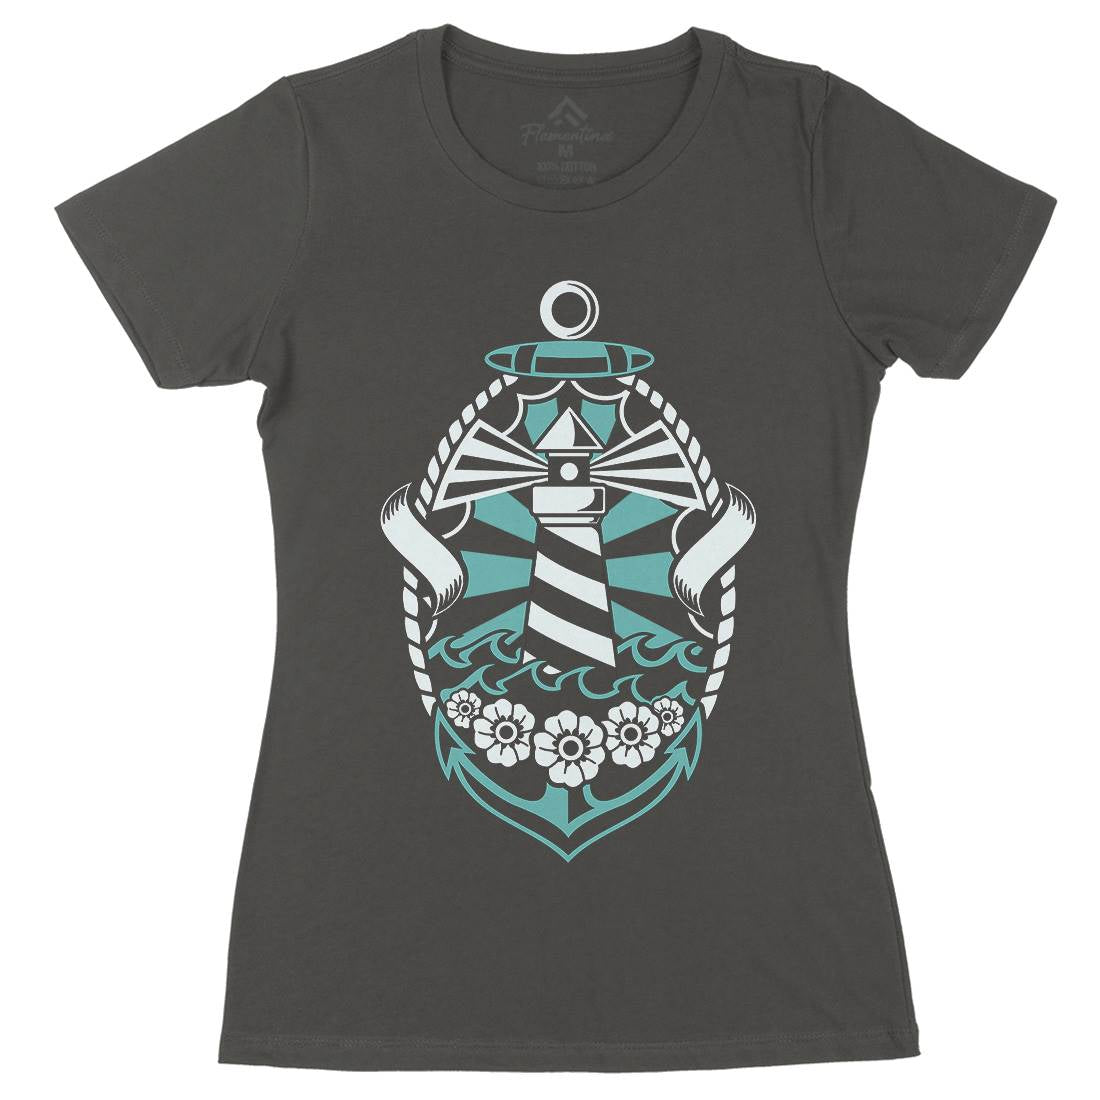 Lighthouse Womens Organic Crew Neck T-Shirt Navy A086